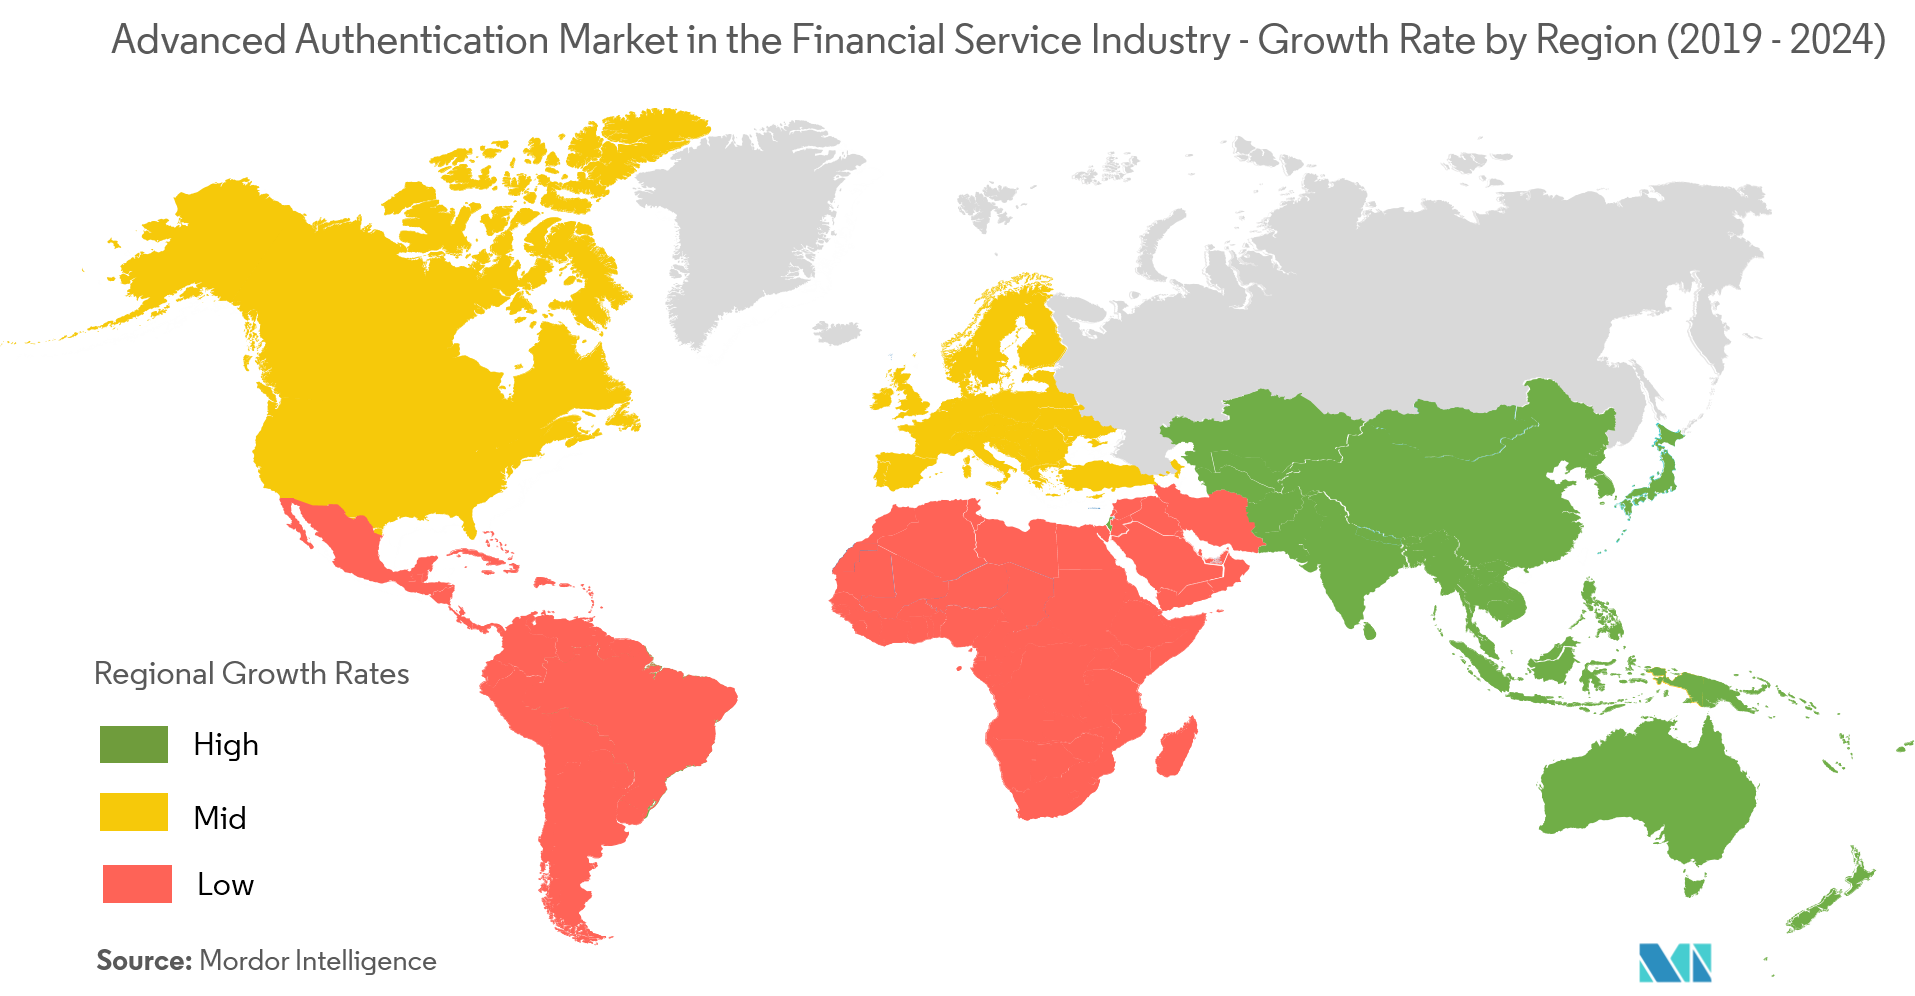 金融服务行业的高级身份验证市场 - 按地区划分的增长率（2019-2024）